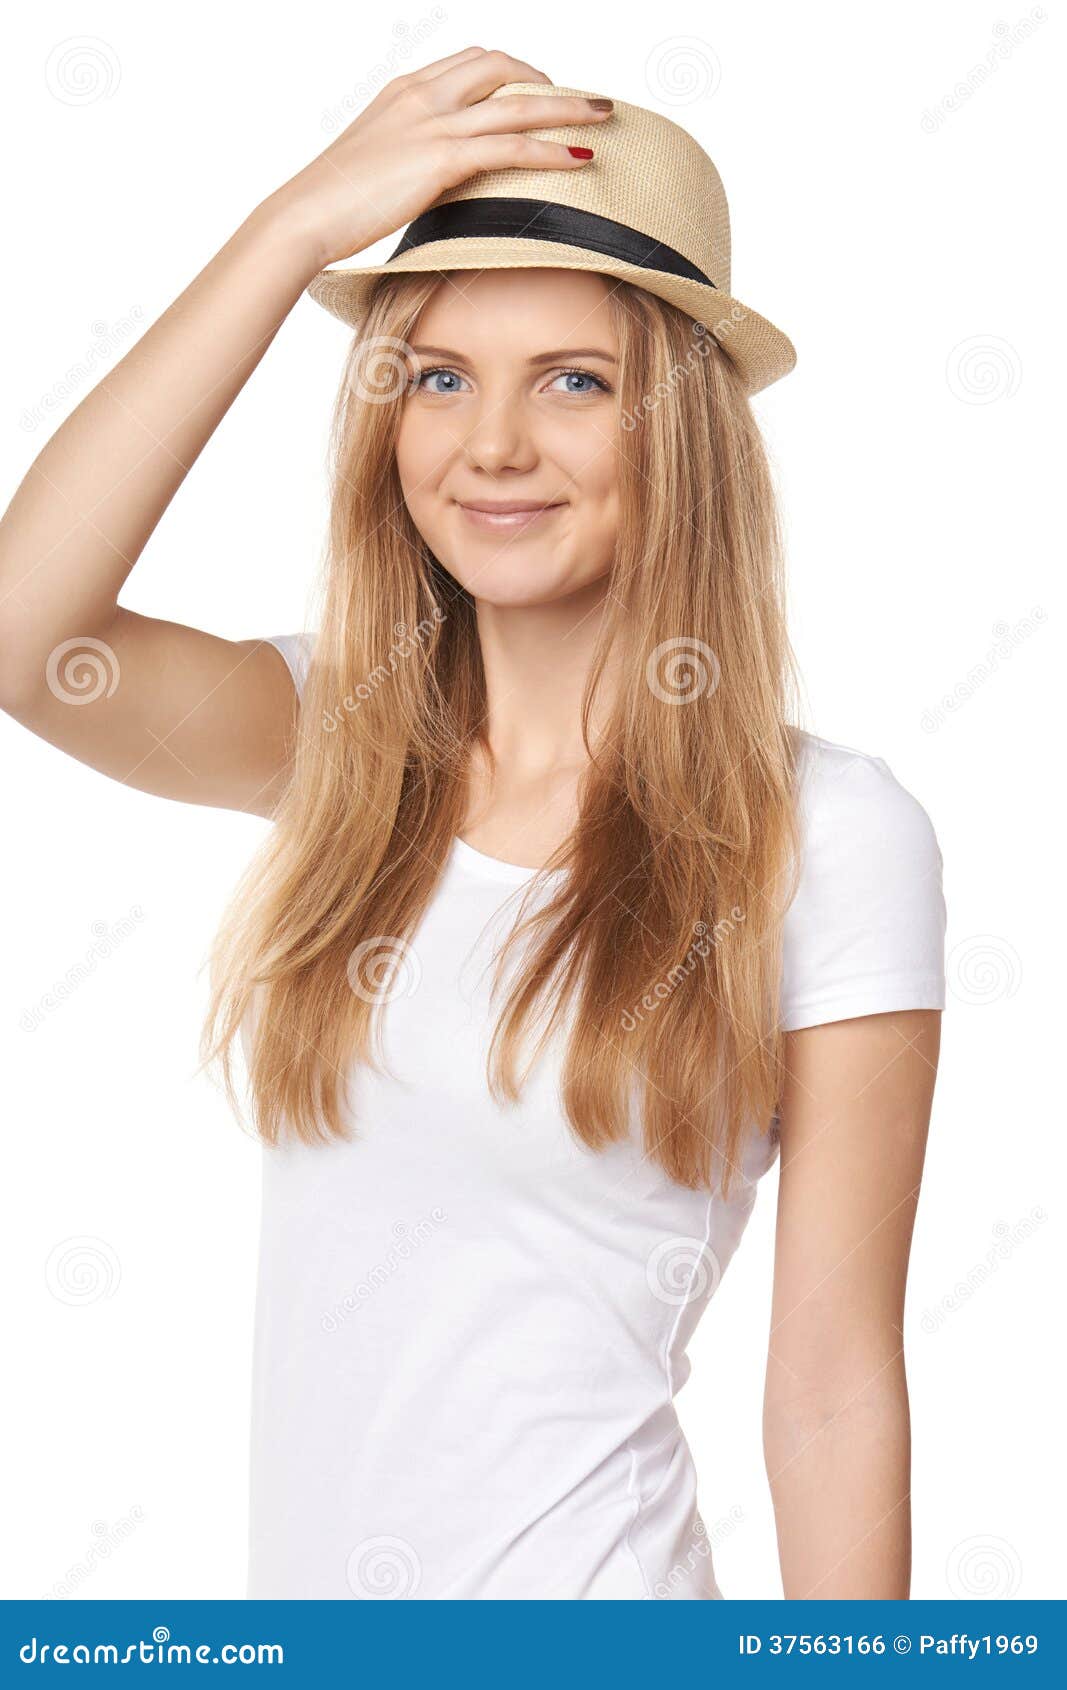 She this hat. Шляпа в руке. Придерживая шляпу. Девушка держит шляпу. Рука держит шляпу.